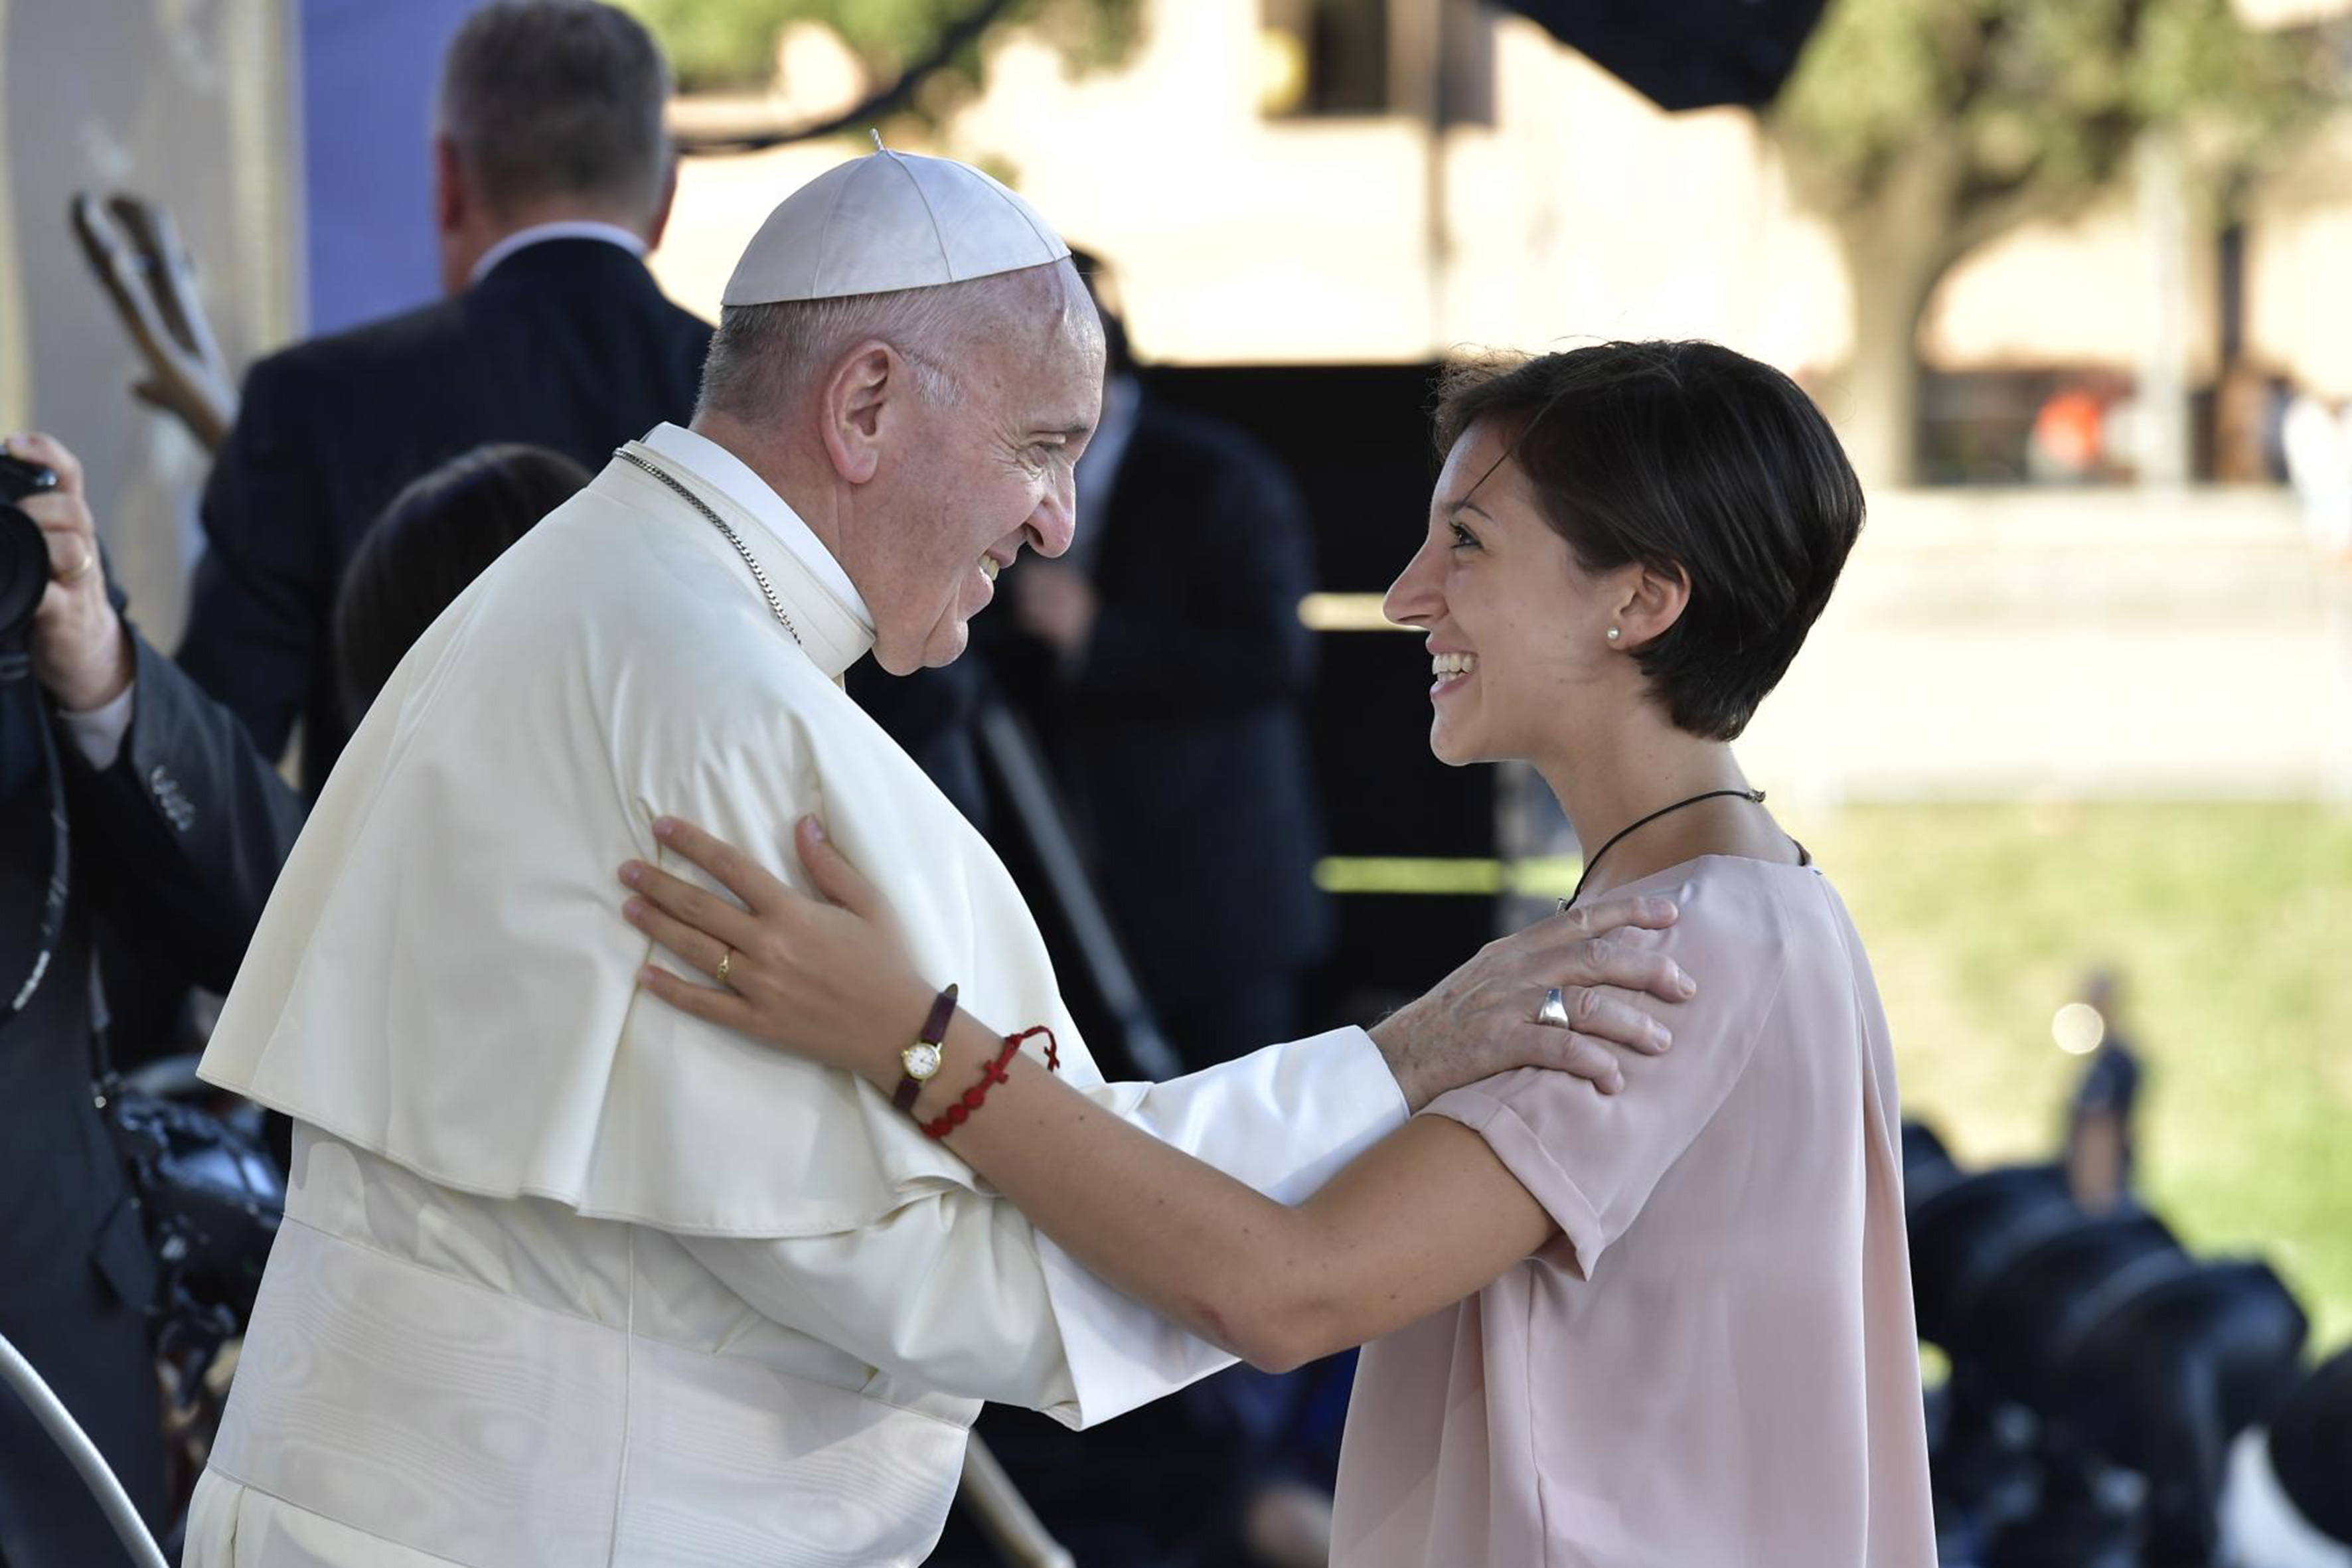 Veillée de prière avec les jeunes, Circo Massimo, 11/8/2018 © Vatican Media